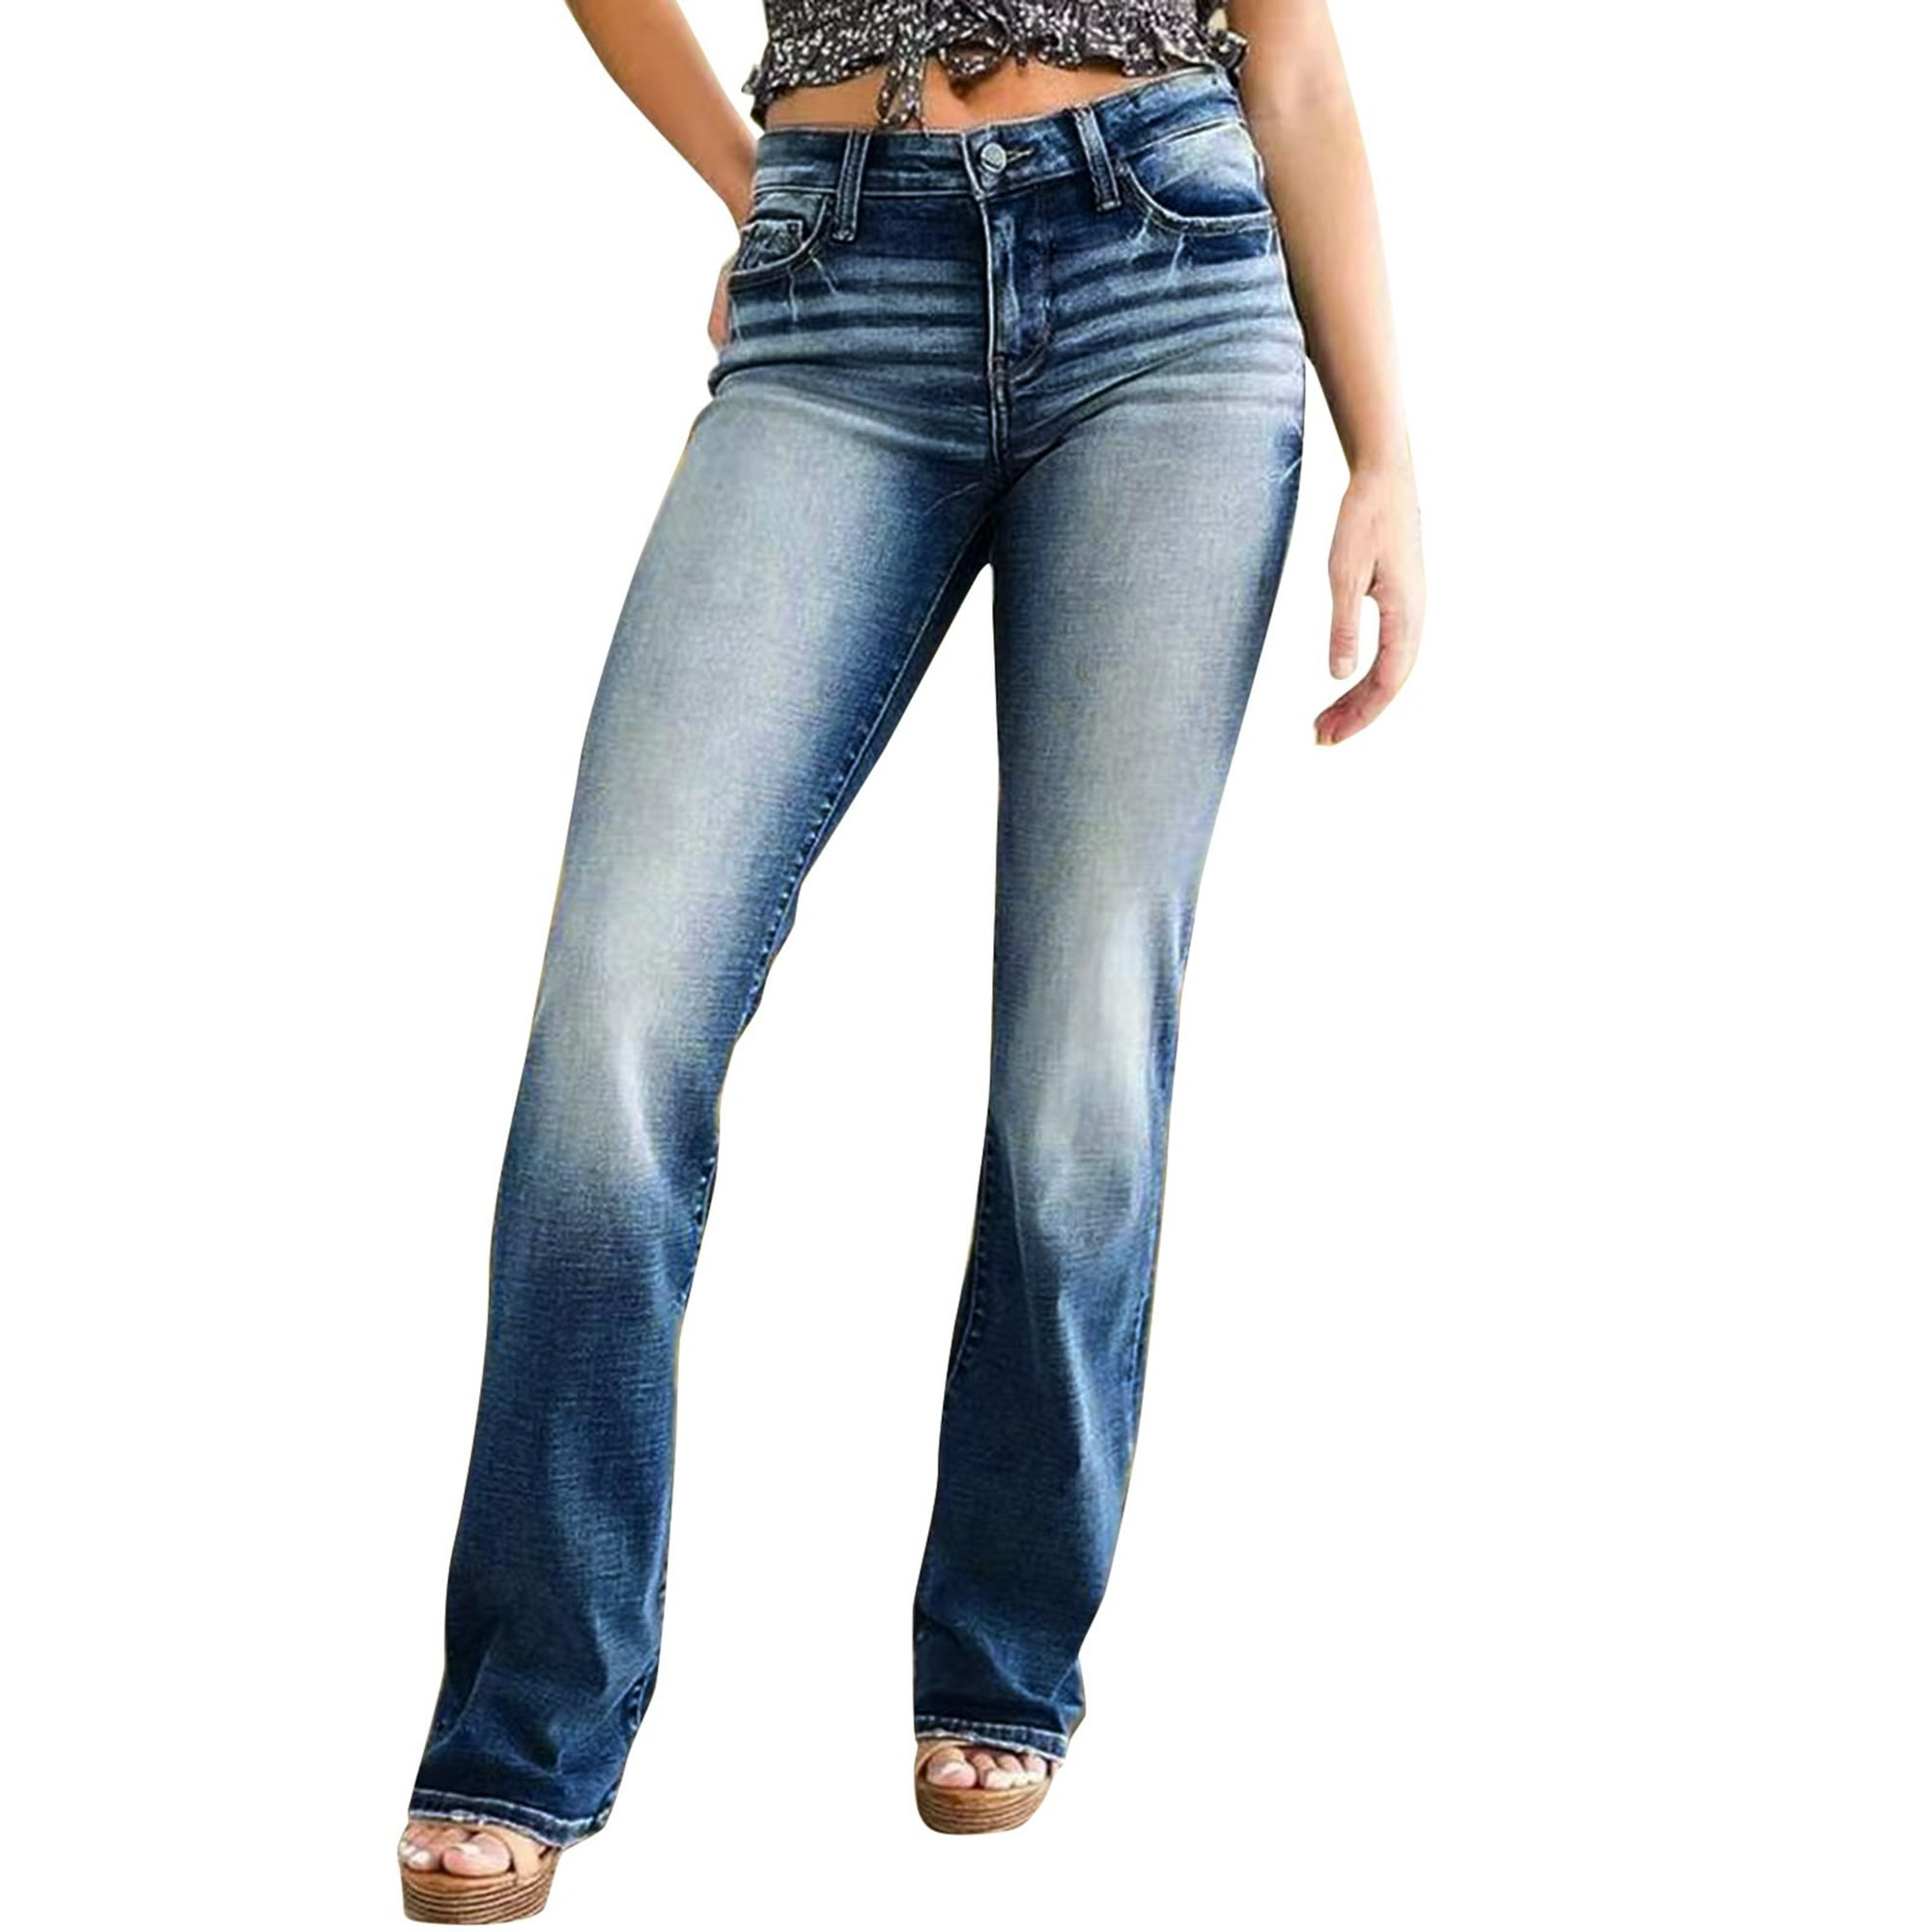 Gibobby Jeans dama cintura alta Pantalones estampados Pantalones de Jeans  Casual Mujer Pantalones largos con correa de bolsillo(Azul oscuro,G)